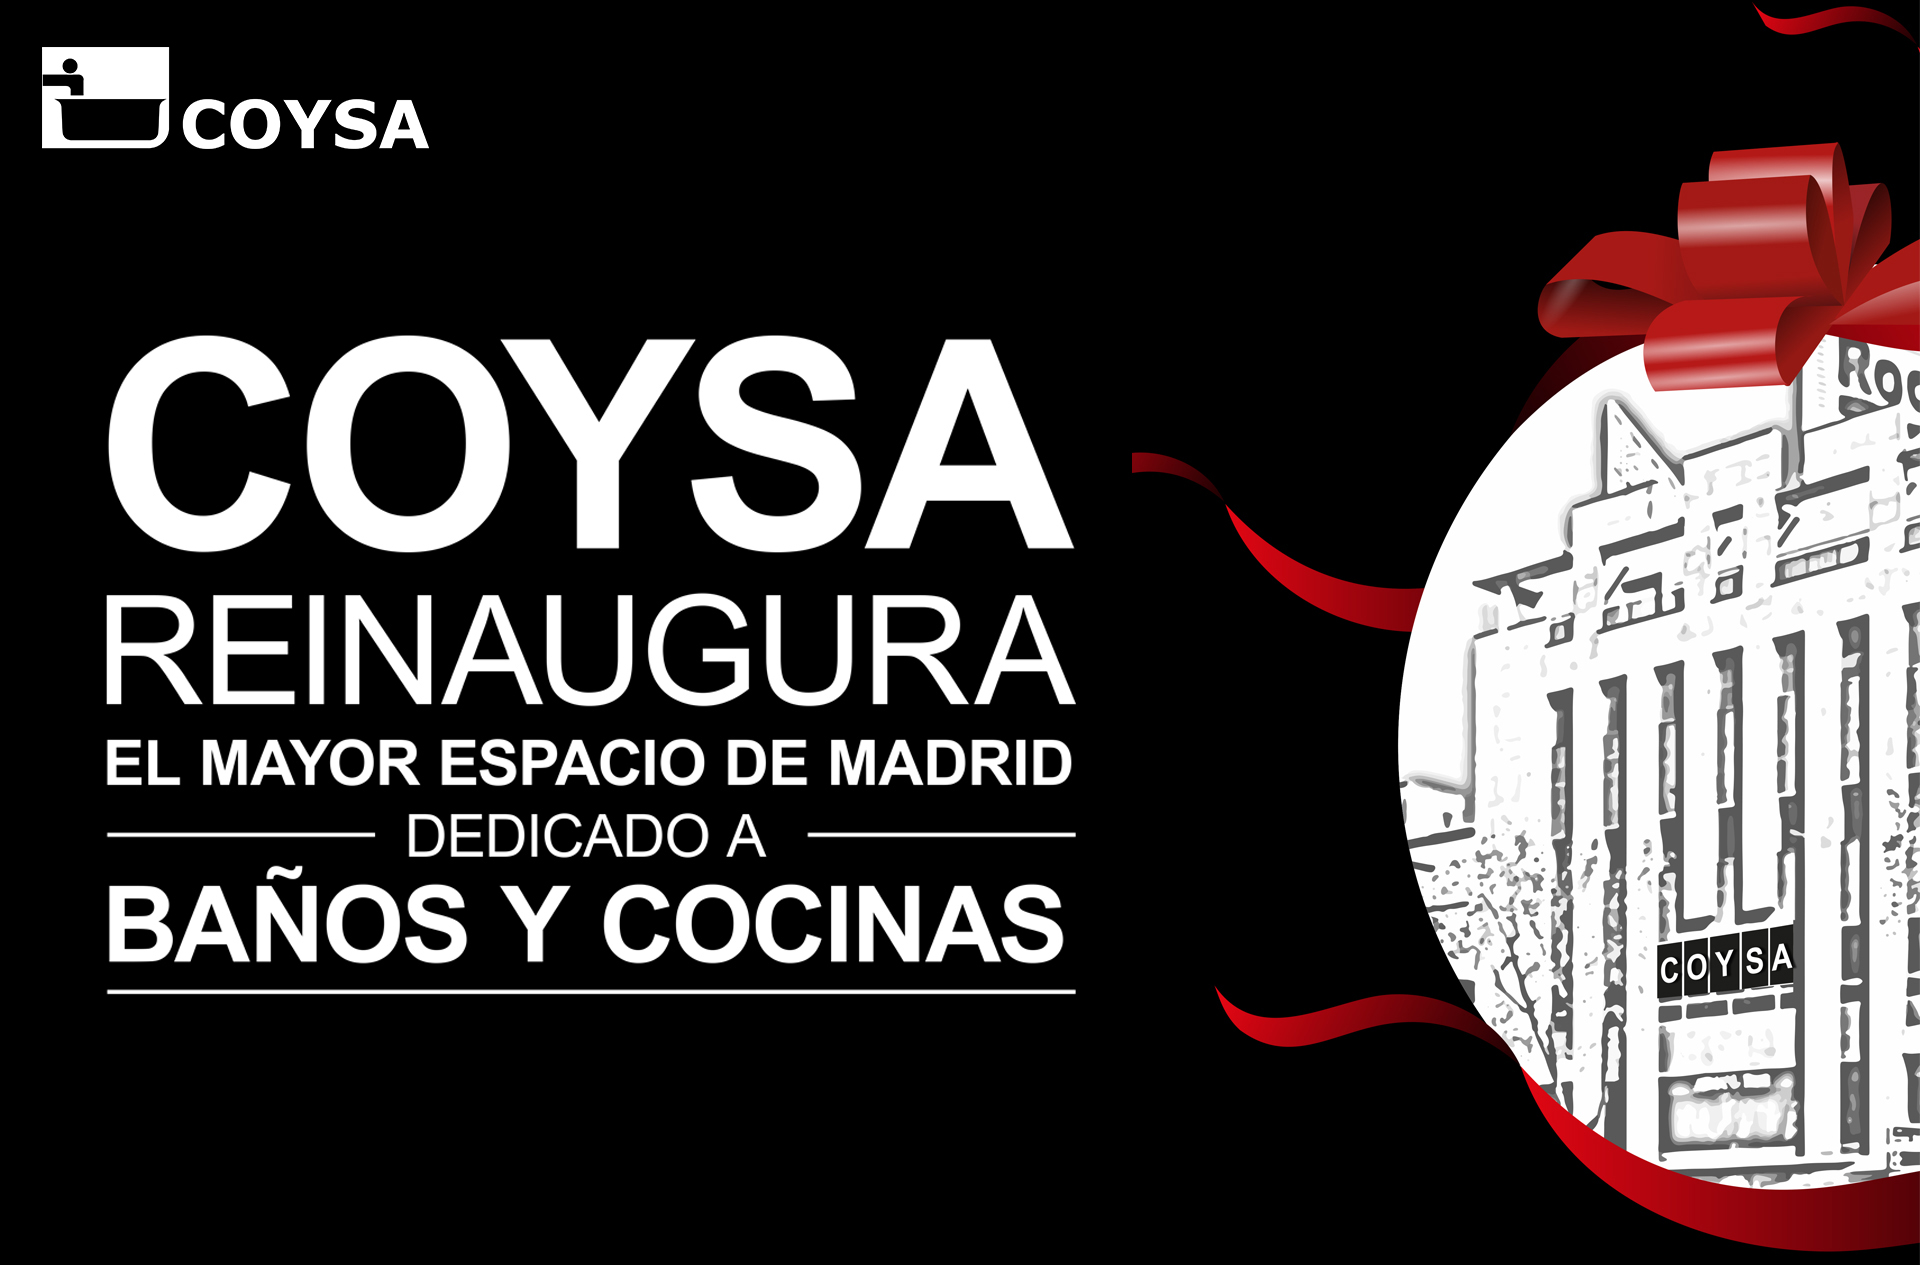 COYSA reinaugura el mayor espacio de Madrid dedicado a Baños y Cocinas